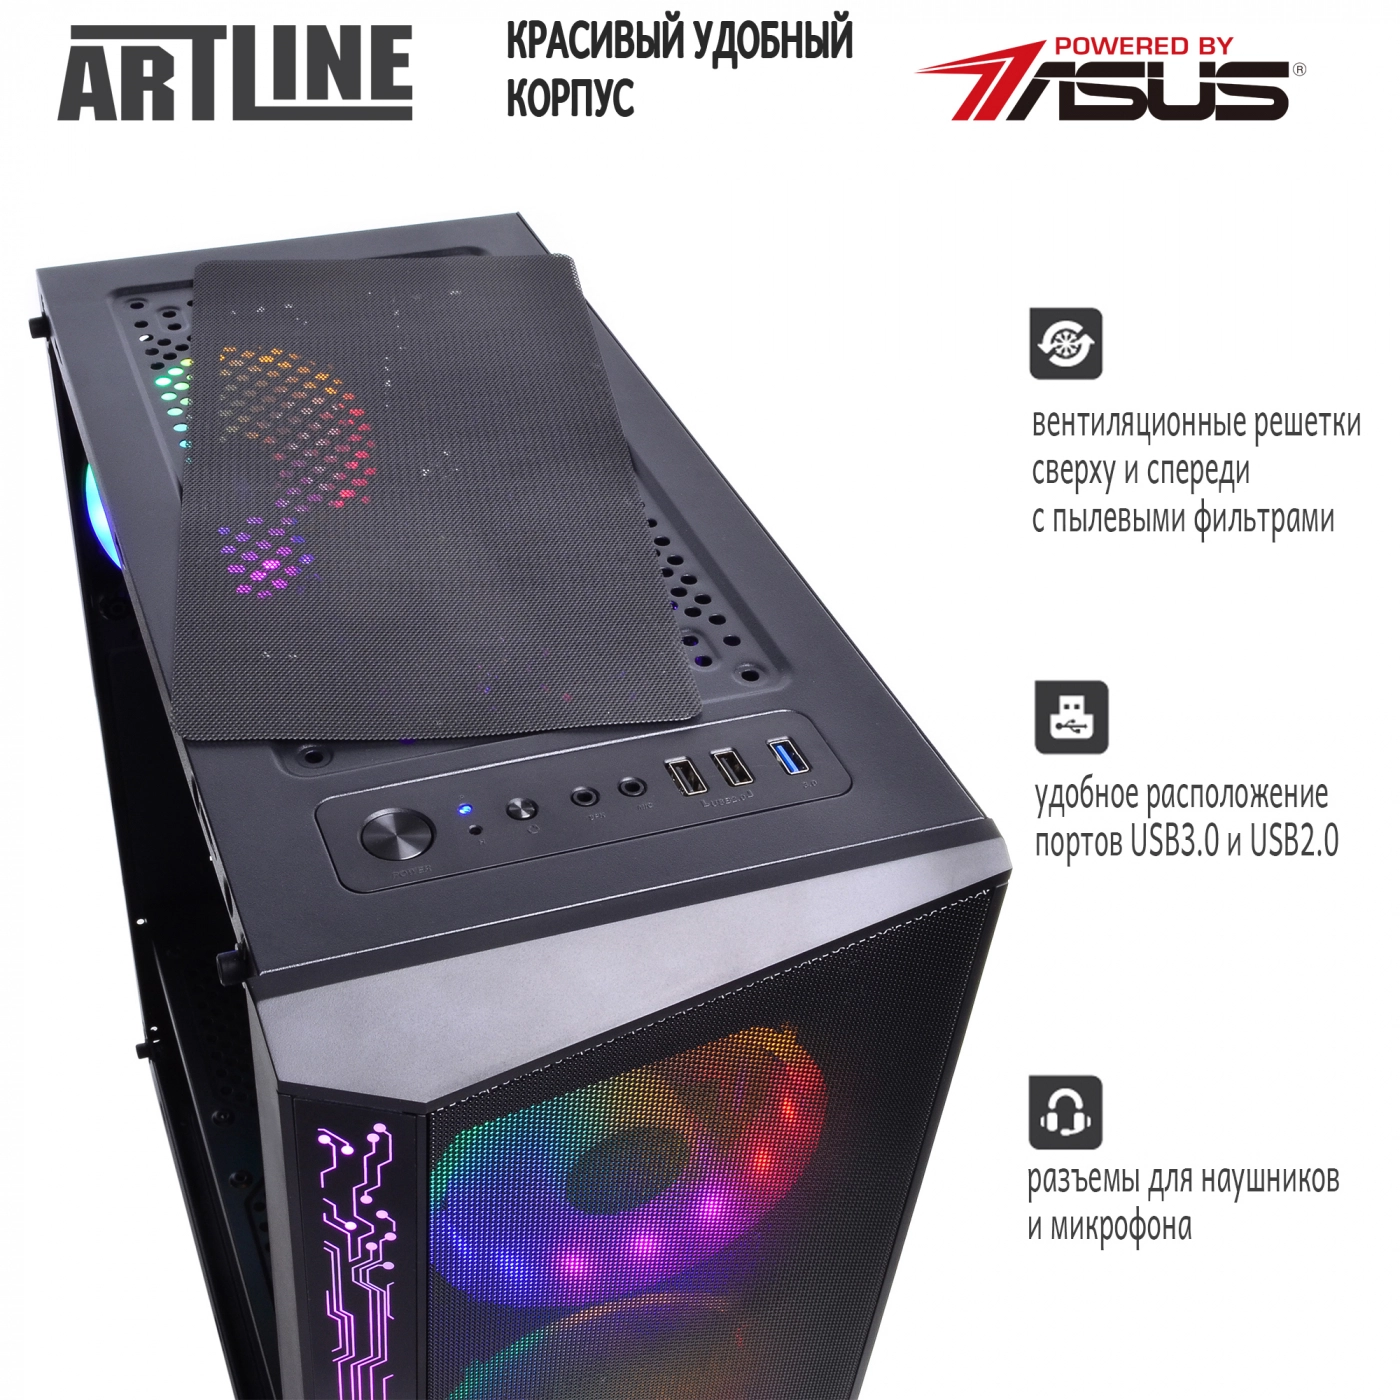 Купить Компьютер ARTLINE Gaming X43v14 - фото 3